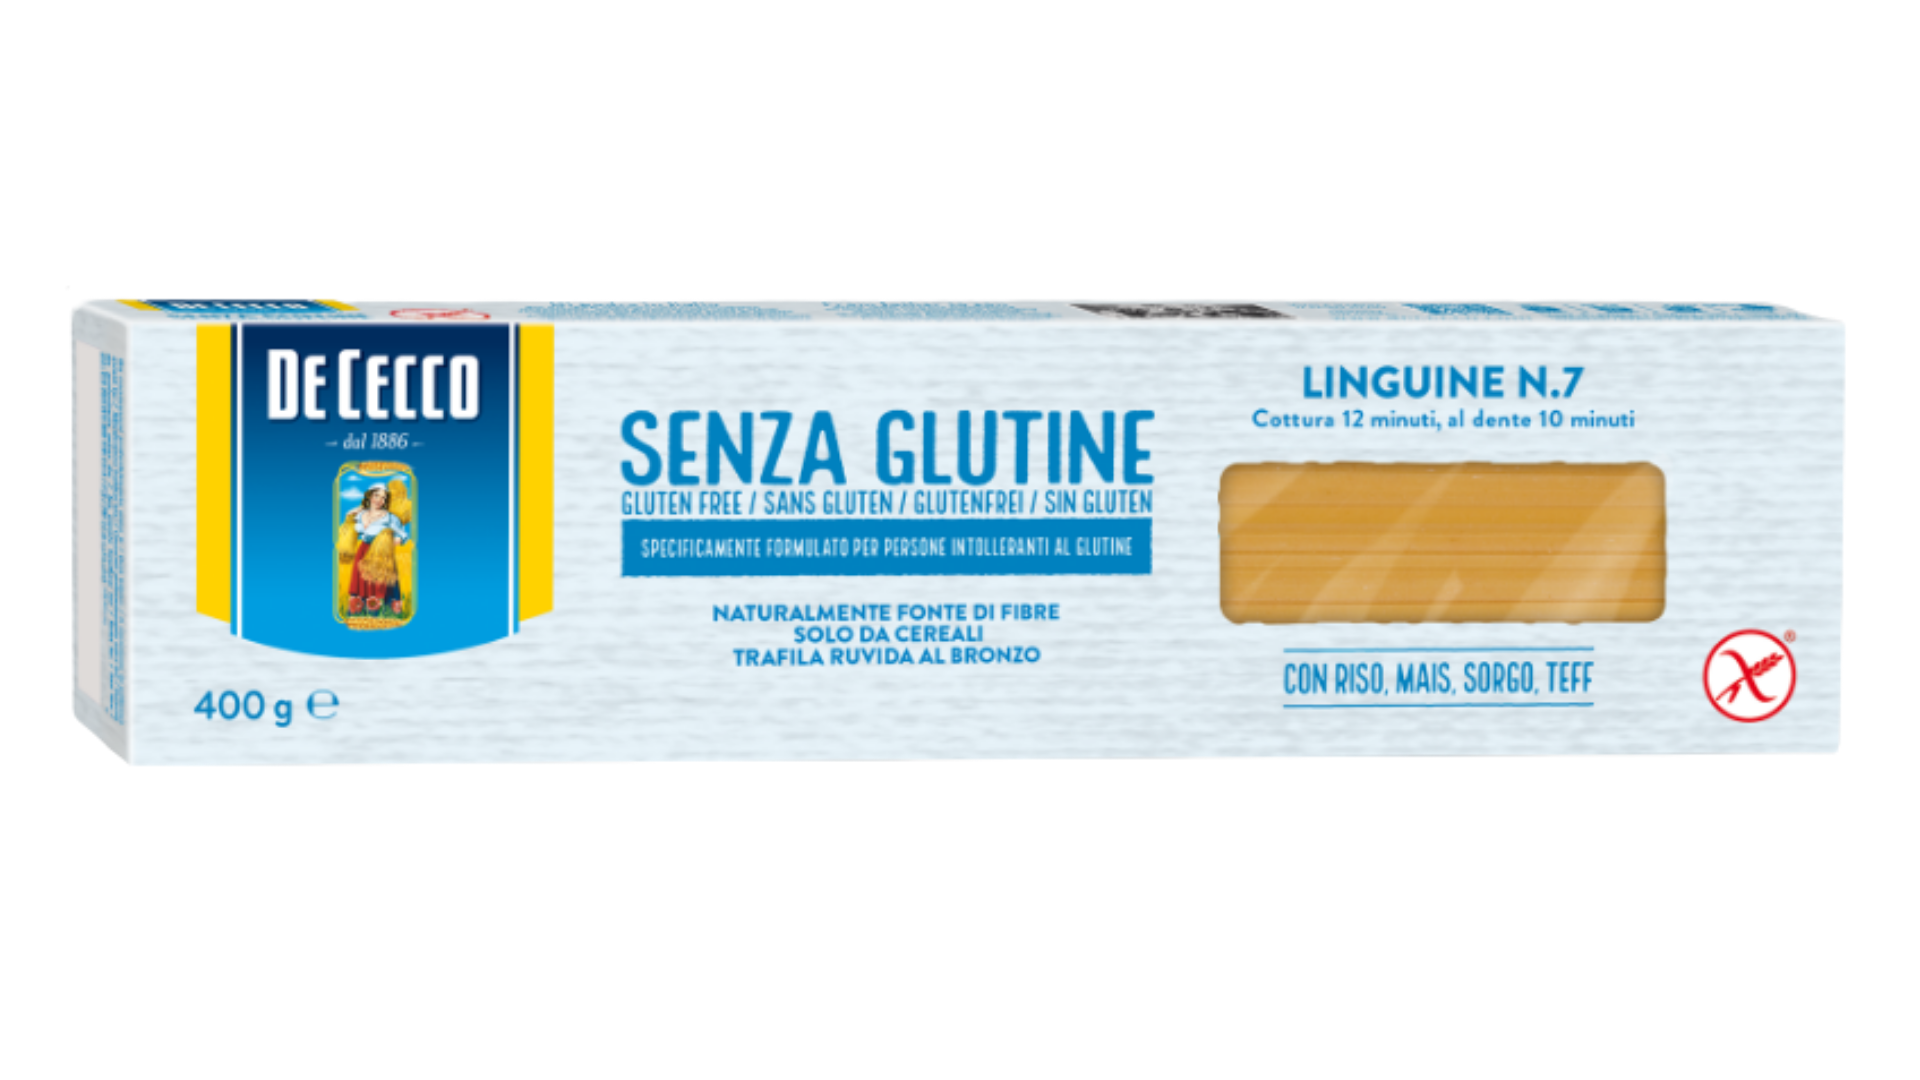 De Cecco linguine № 7 gluten free